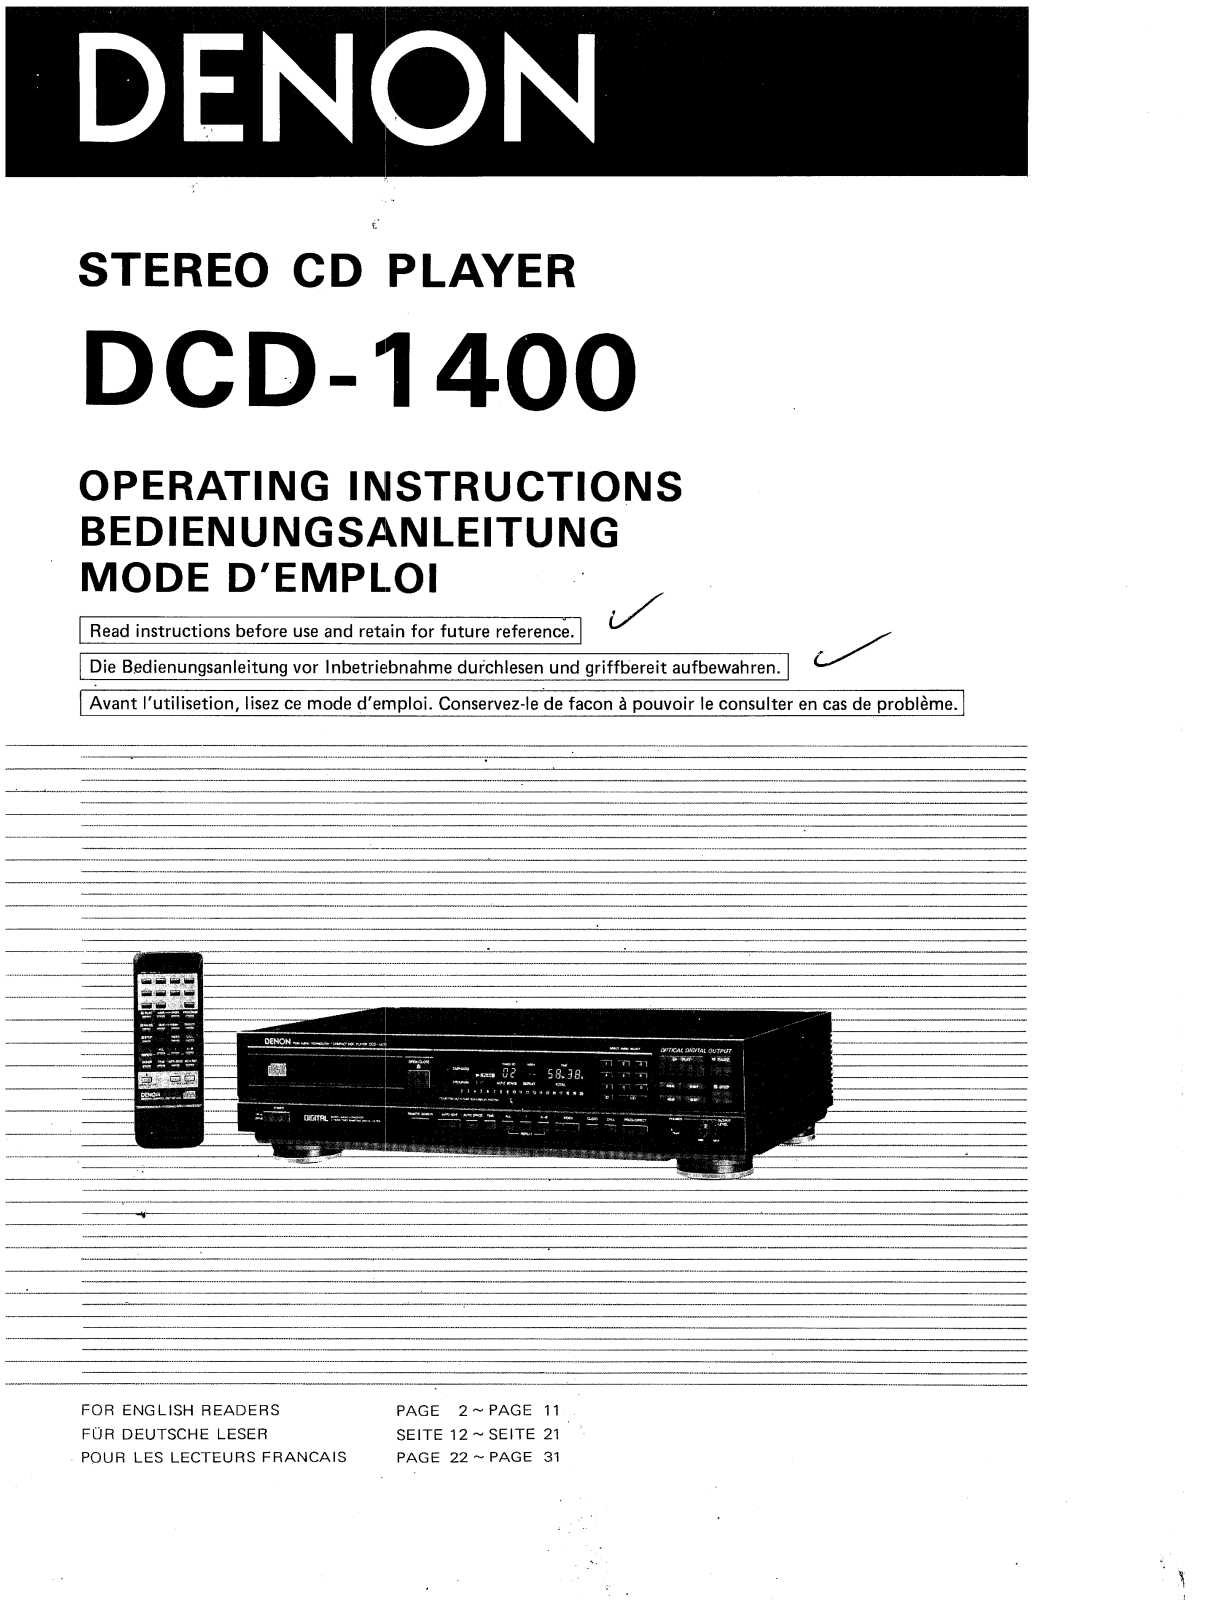 Denon DCD-1400 Owner's Manual